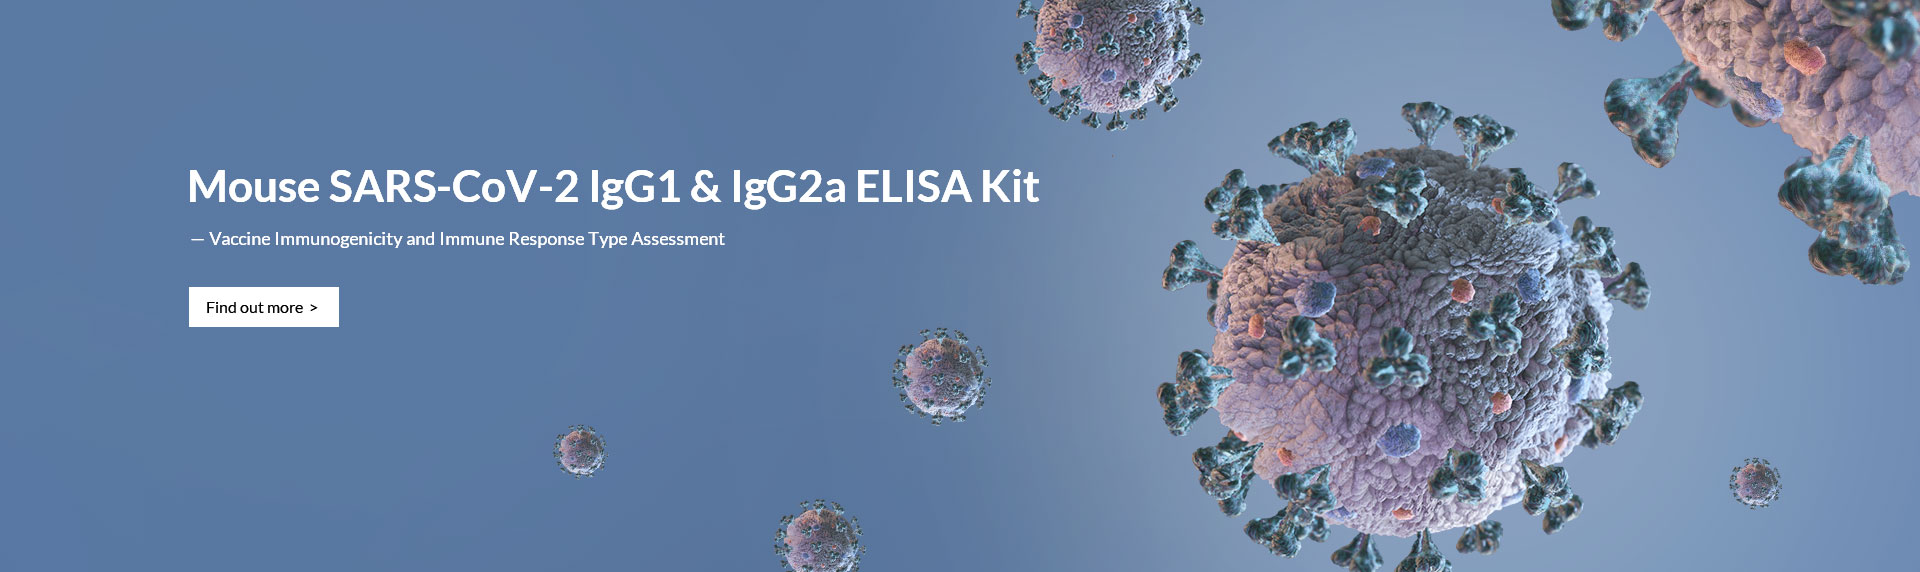 Mouse SARS-CoV-2 IgG1 & IgG2a ELISA Kit